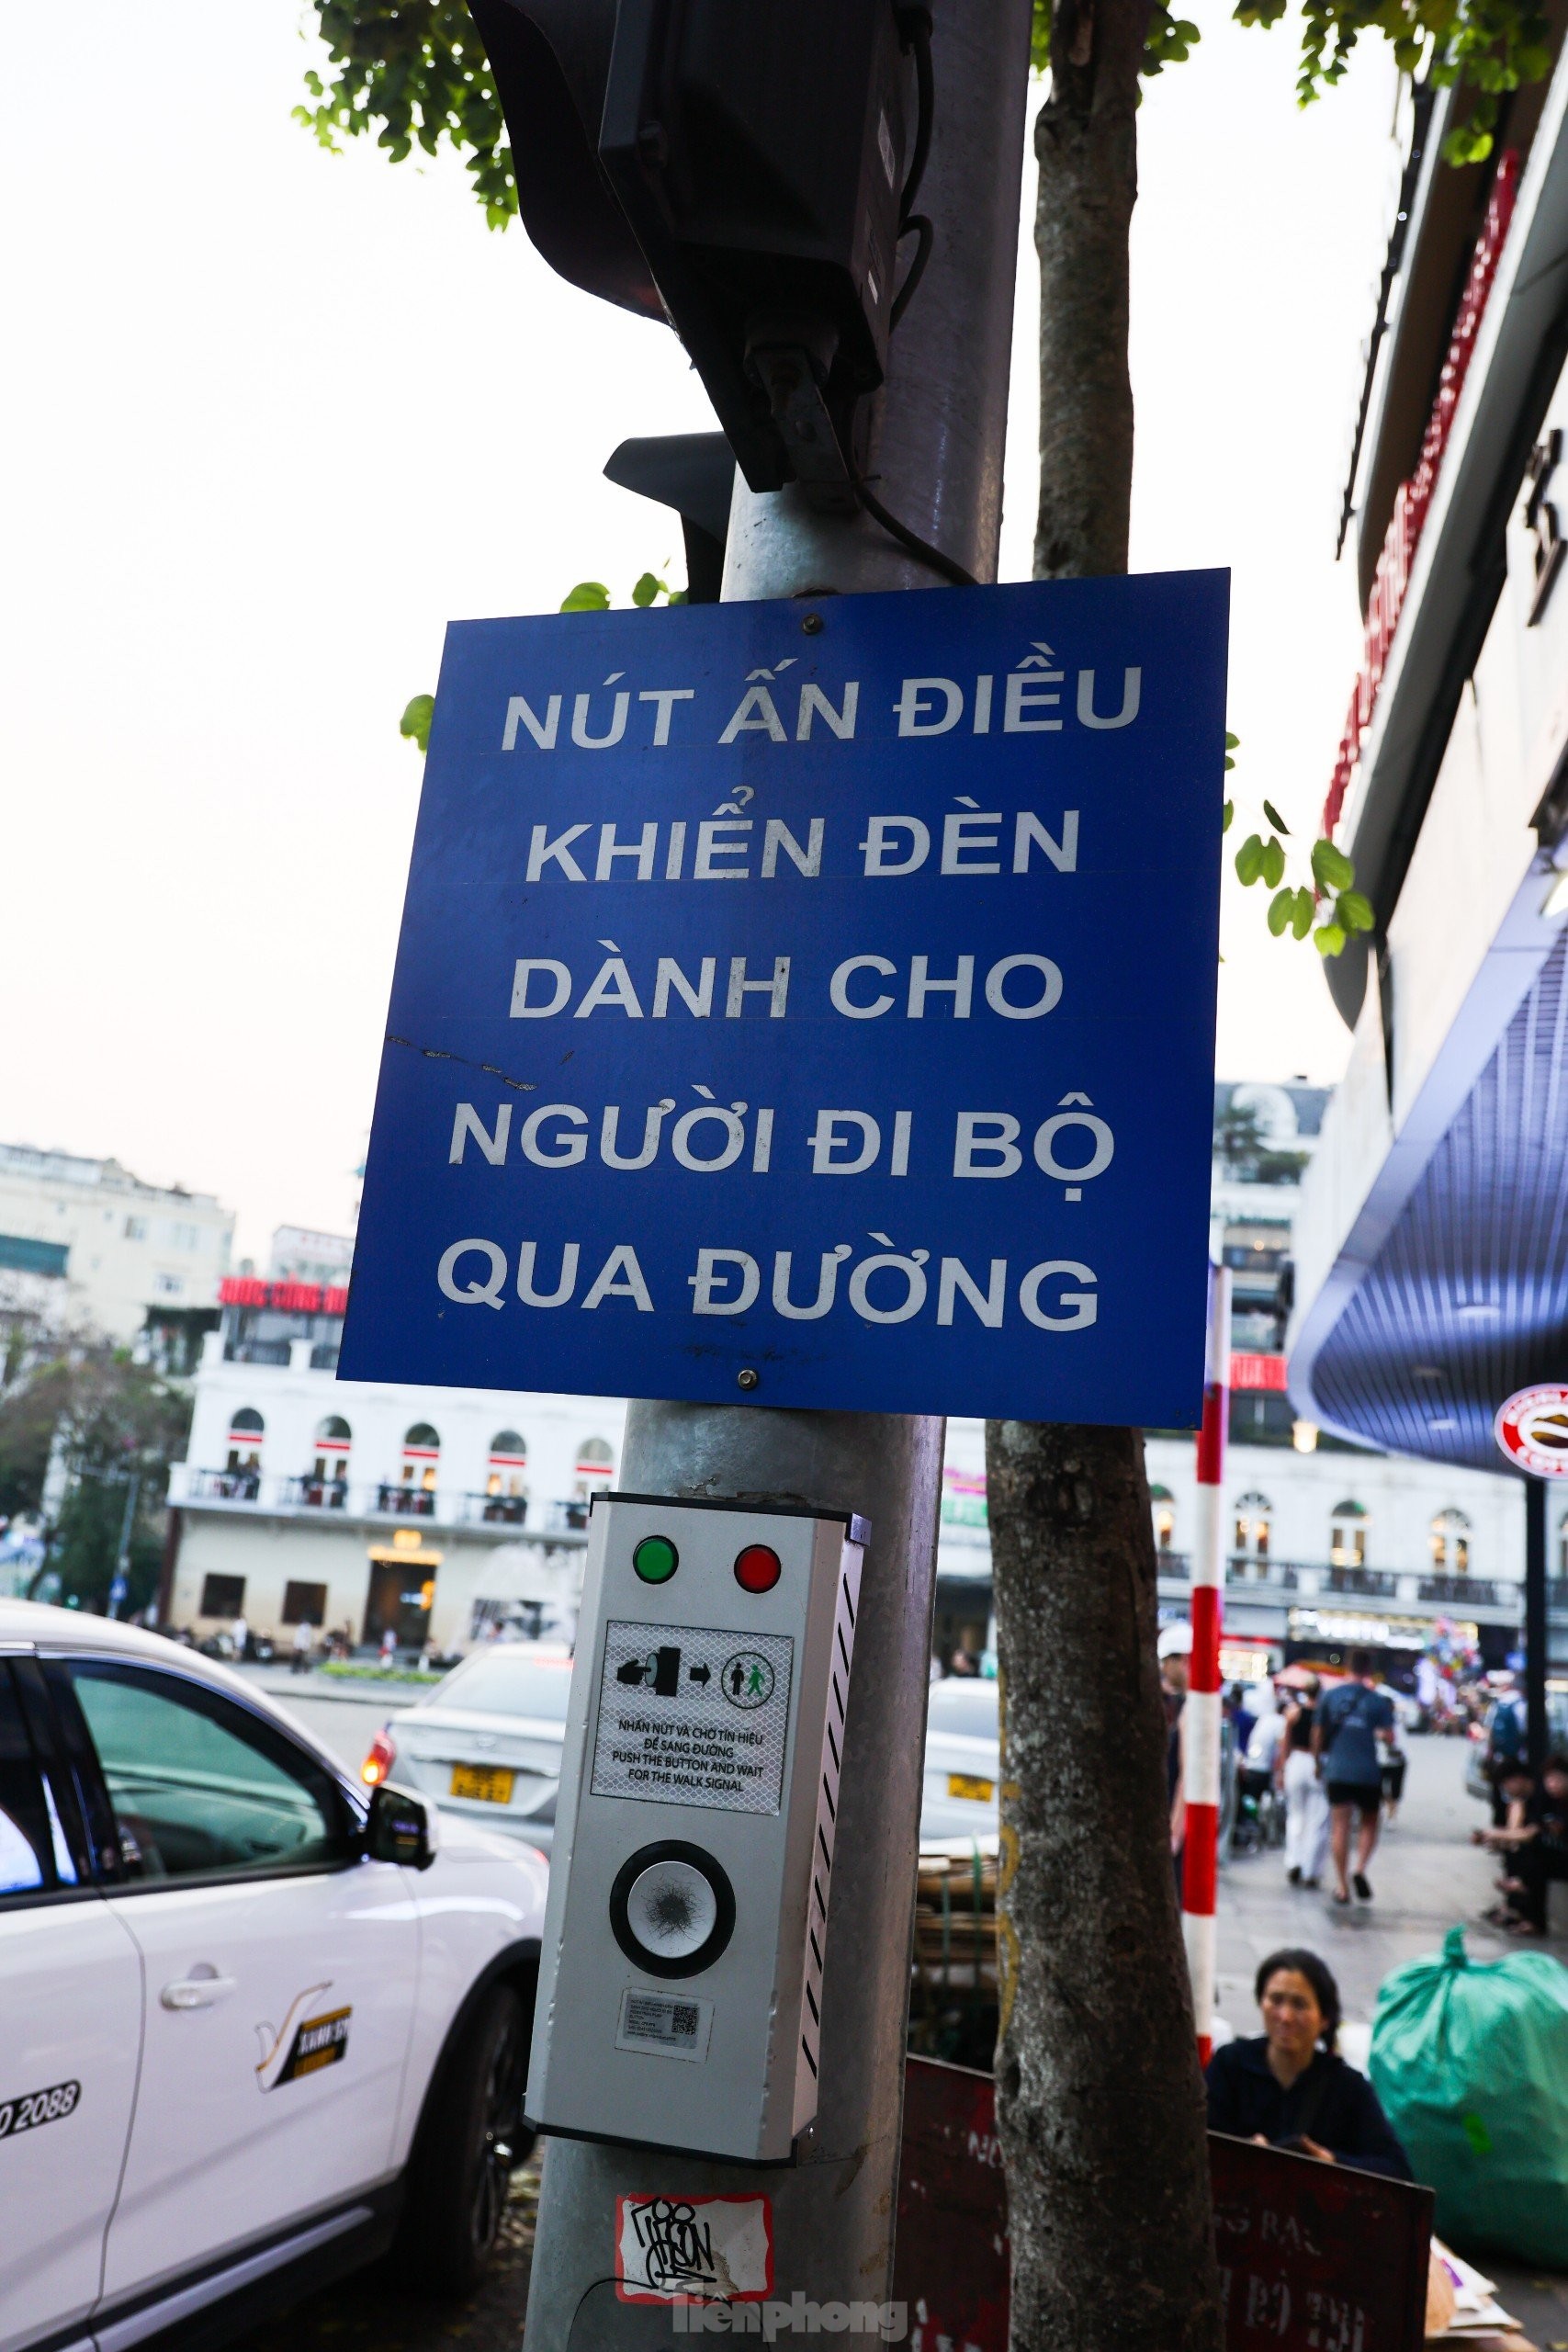 Hà Nội: Đèn 'xin đường' dành cho người đi bộ có cũng như không ảnh 2